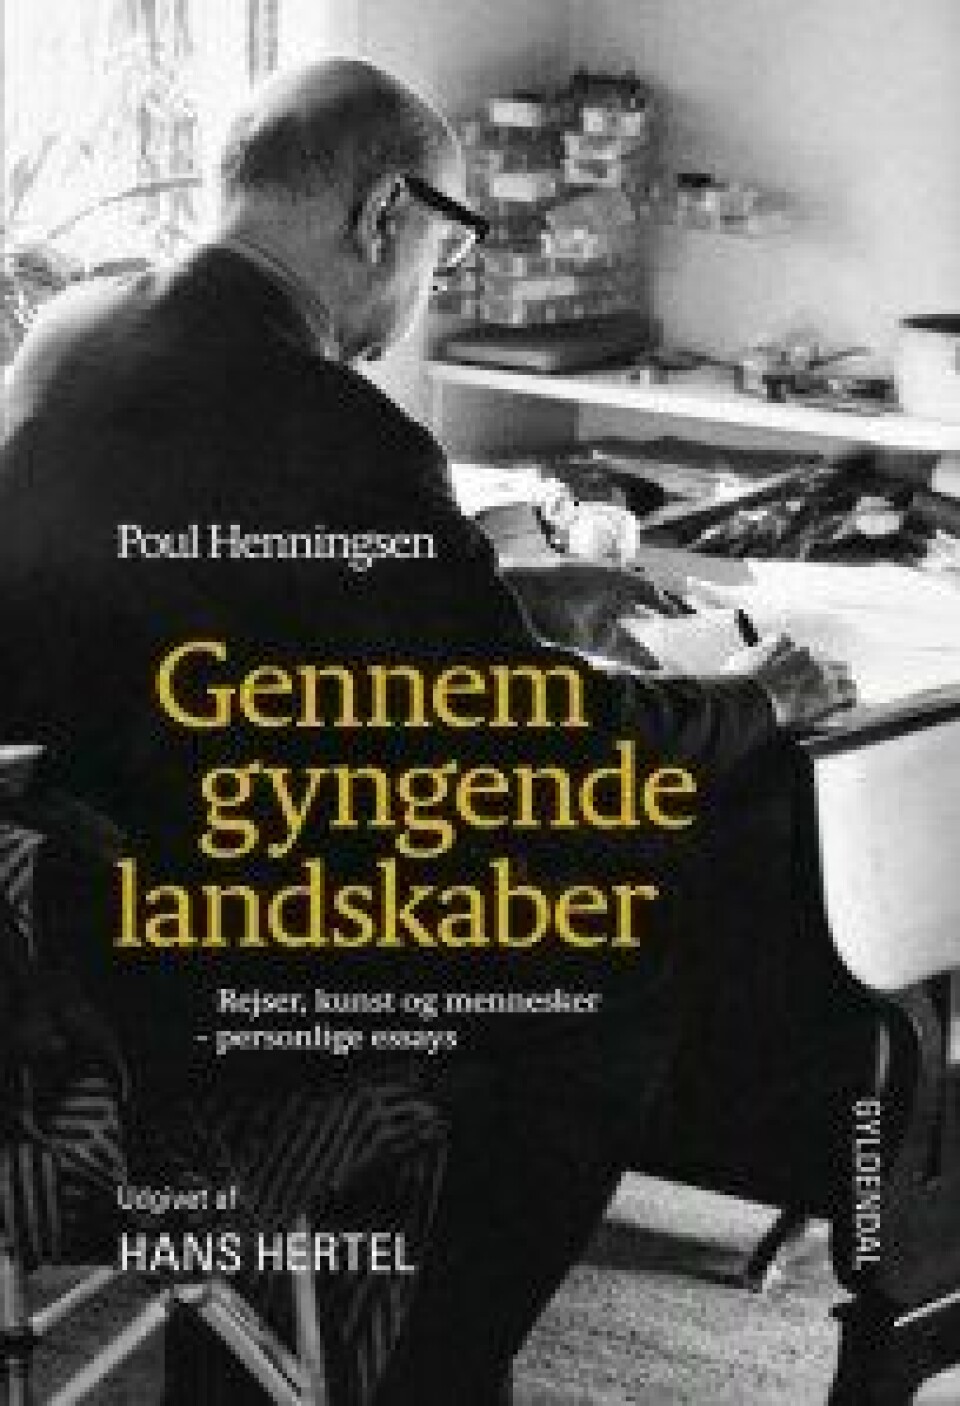 Henningsen, Poul: Gennem gyngende landskaber. Rejser, kunst og mennesker – personlige essays 1925–1967. Udgivet af Hans Hertel. København: Gyldendal 2015.